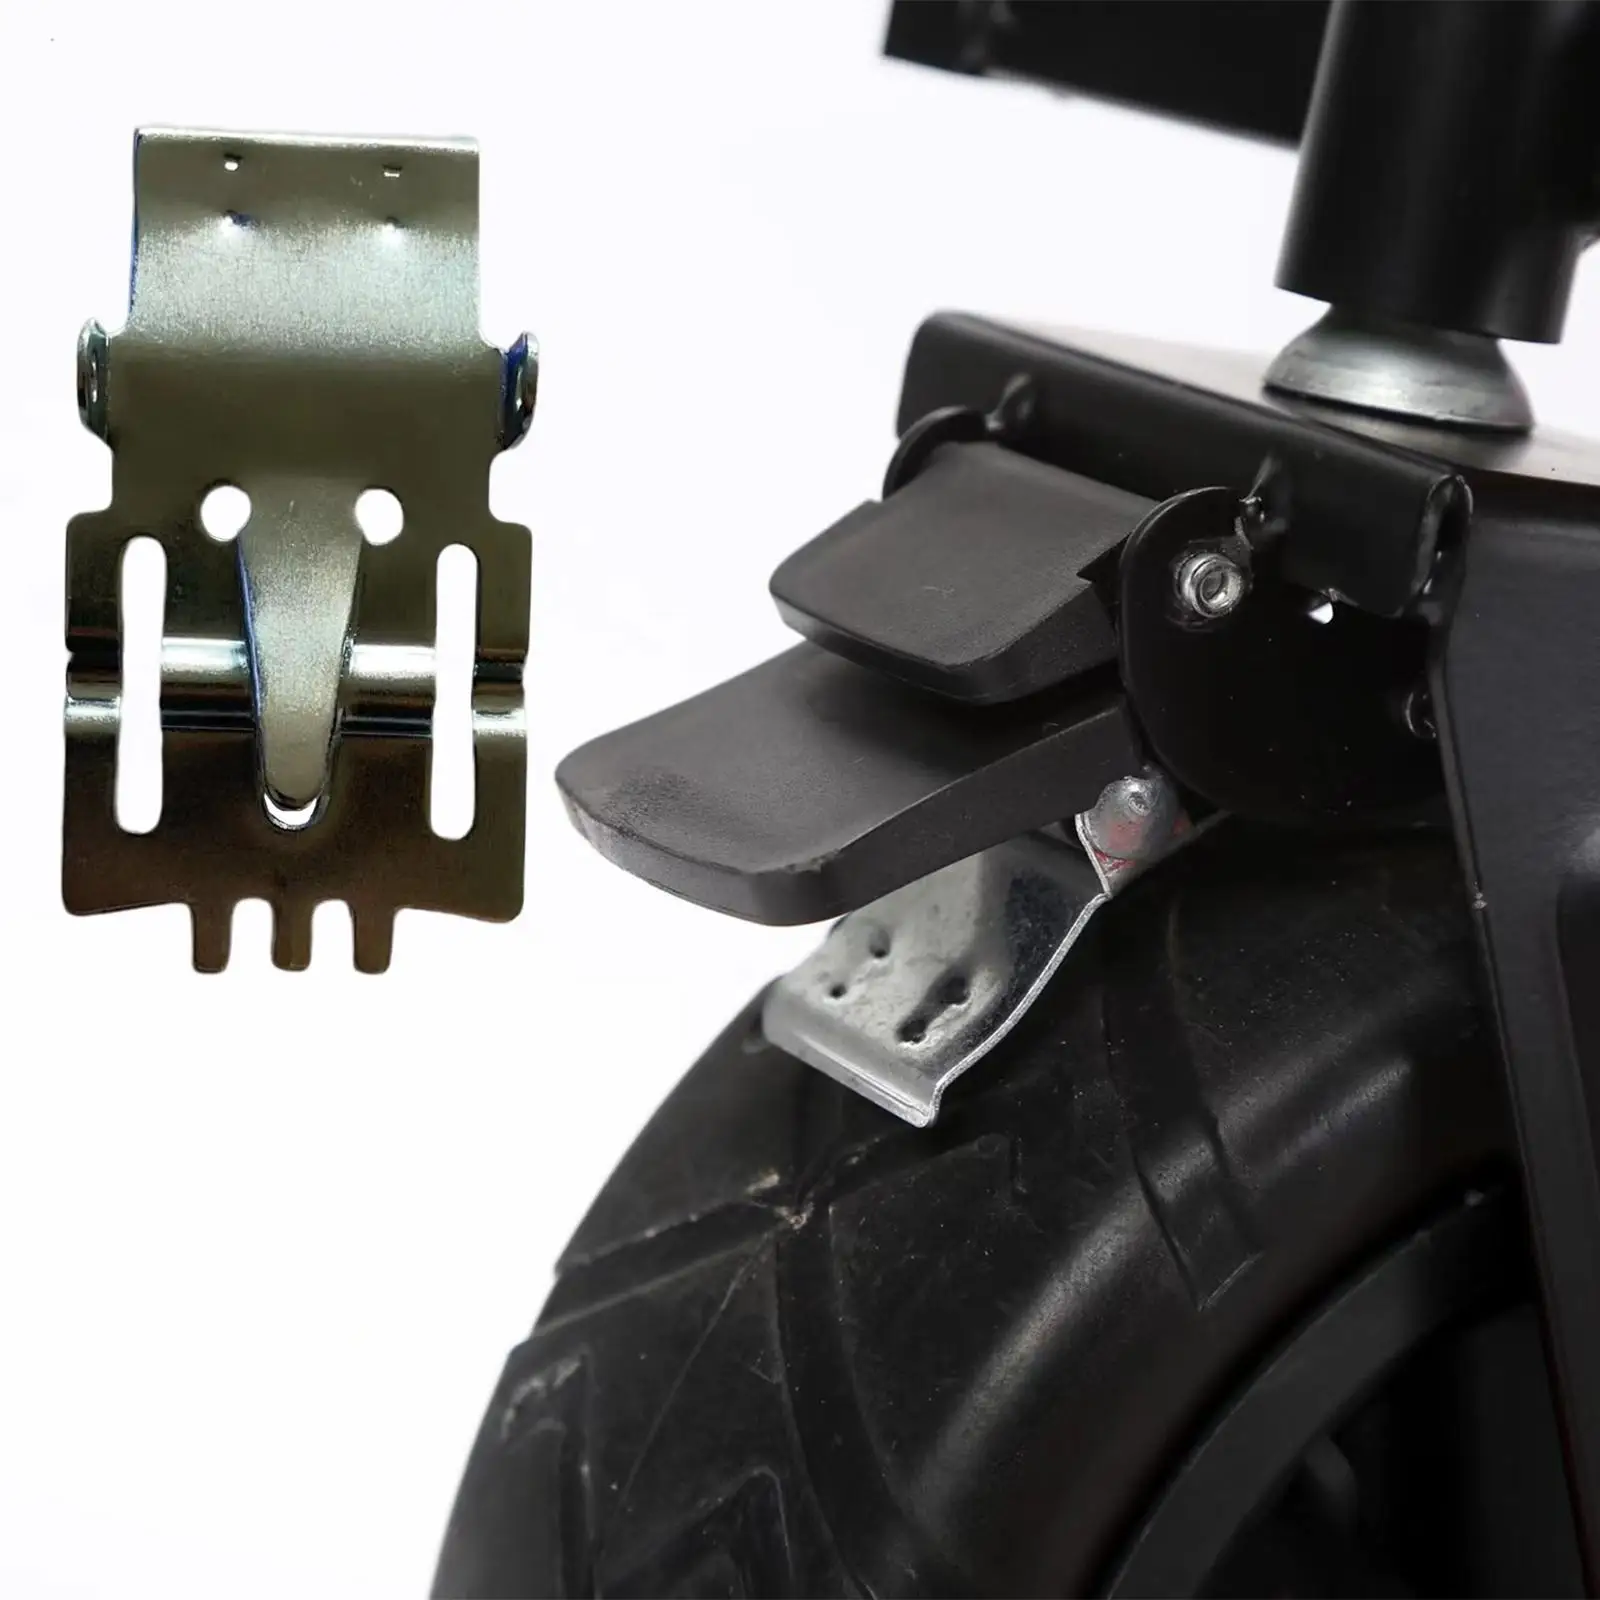 Metal Shopping Trolleys Brake Pad Braking Holder Repair Wagon Locking Pad Parts Durable Accessories Replace